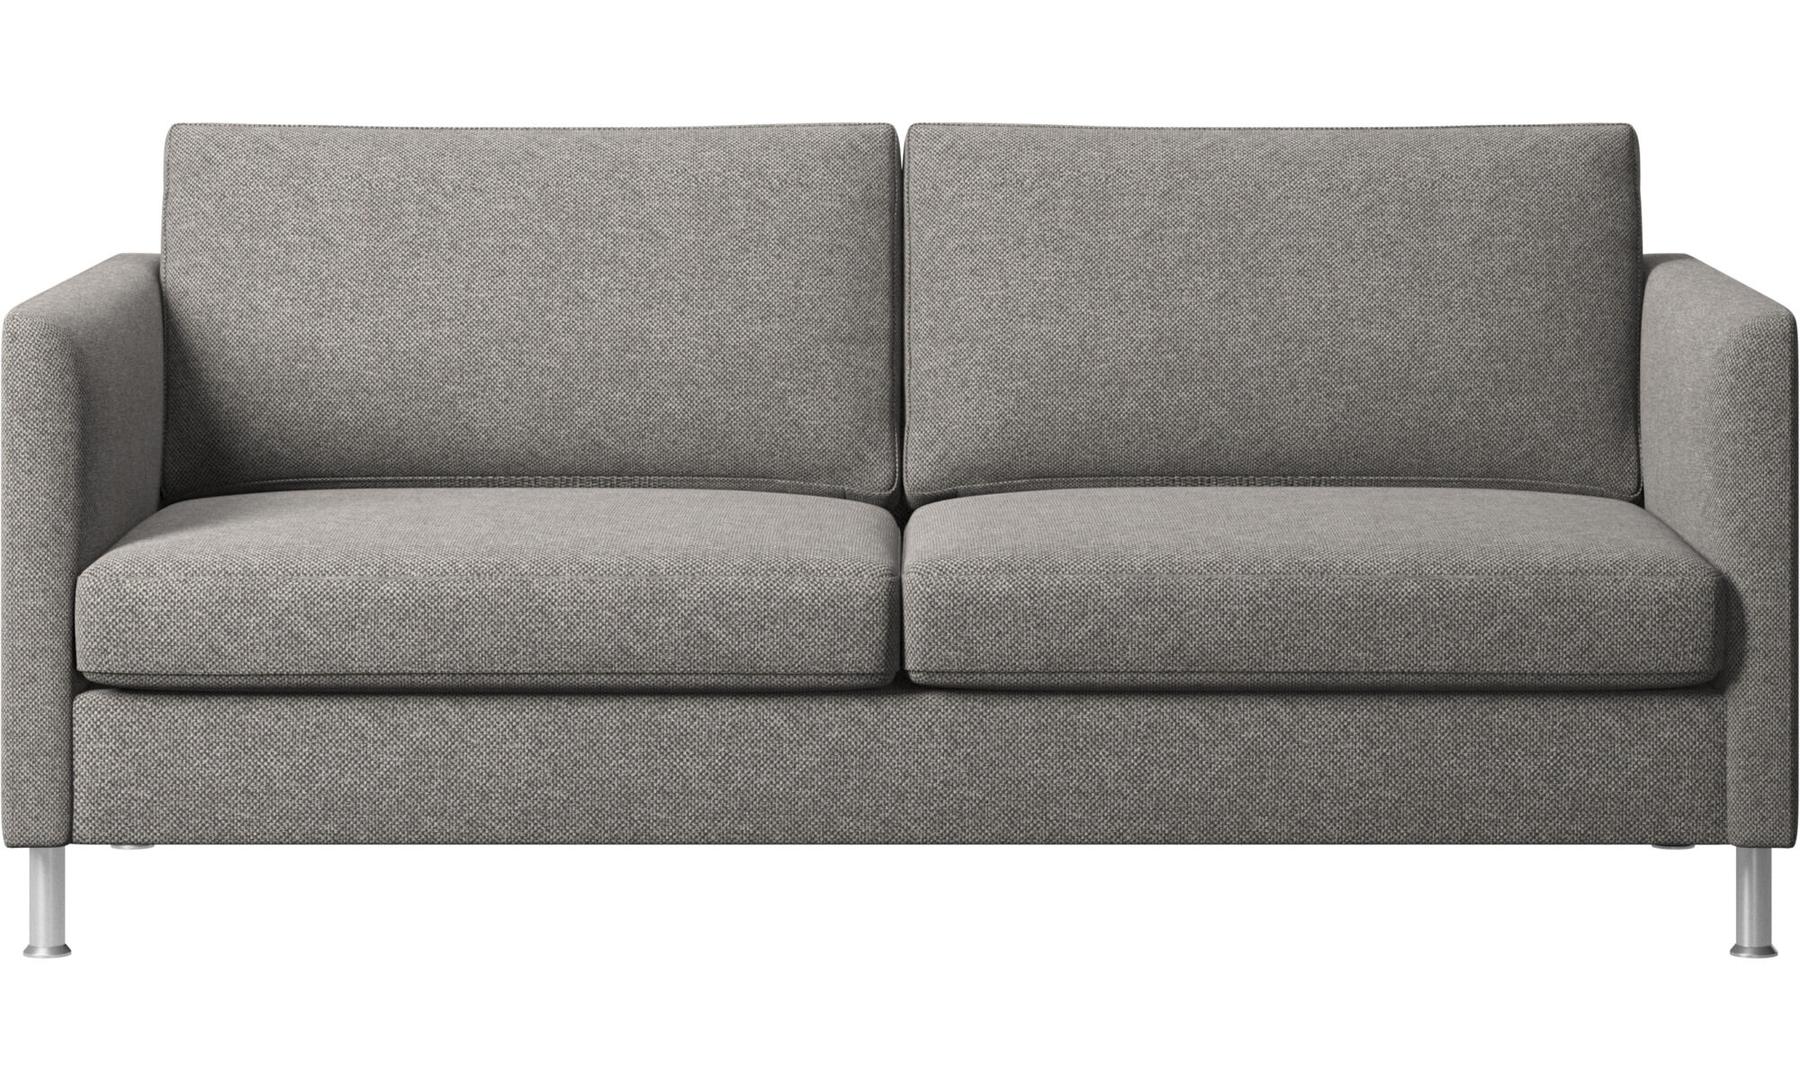 Sofa dvosjed od tkanine za moderne interijere,  14.167 kn